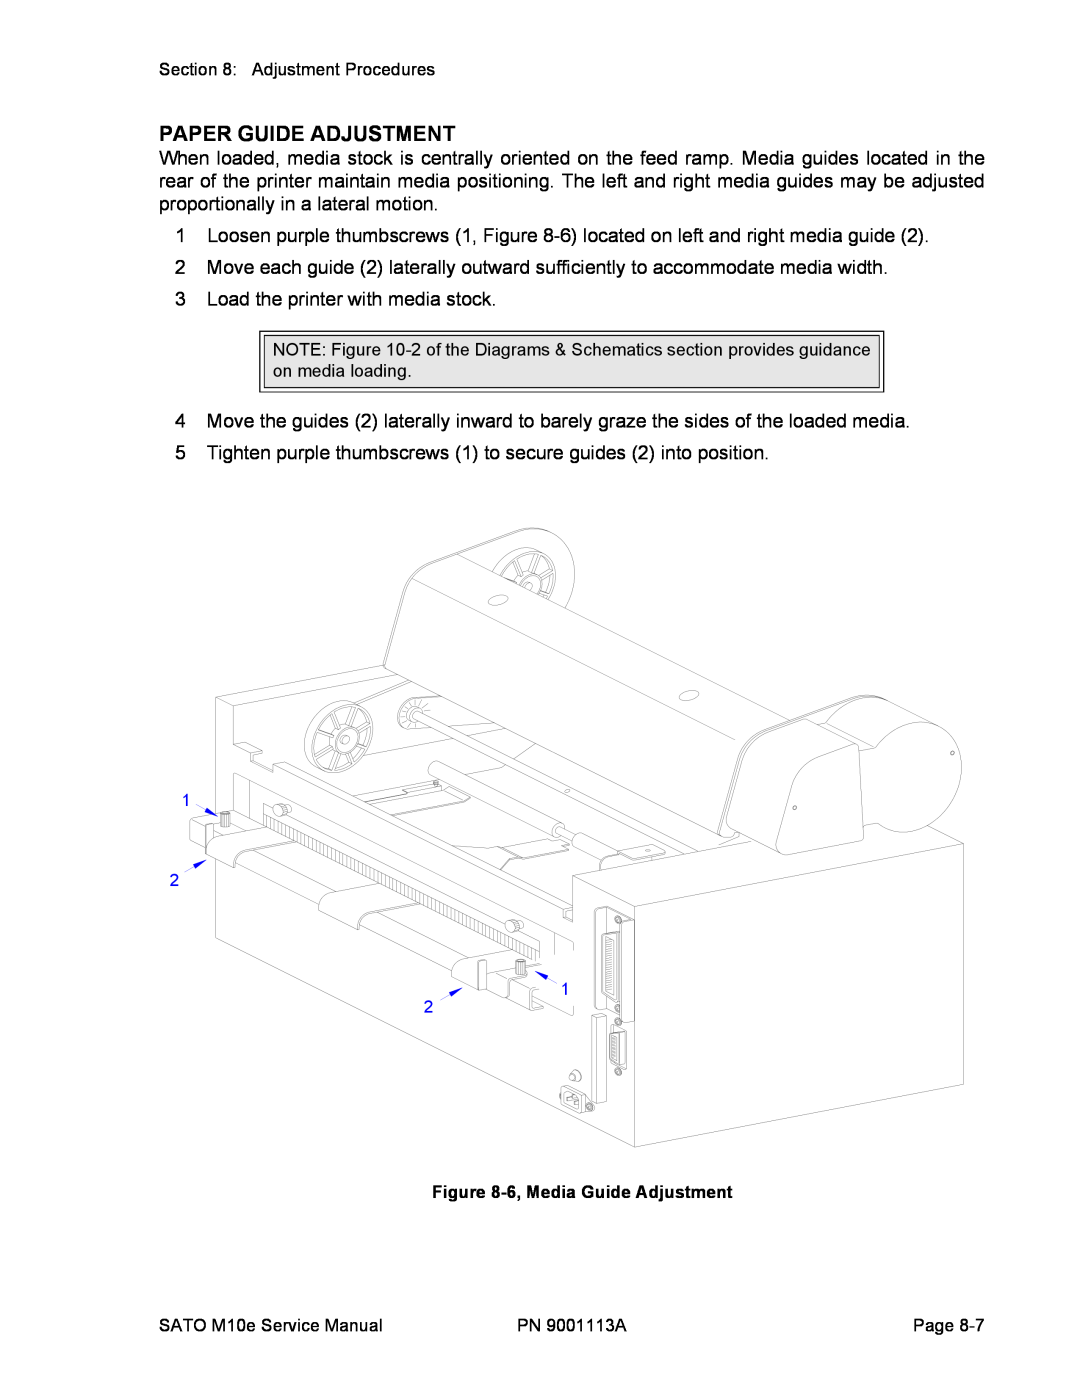 SATO 10e service manual Paper Guide Adjustment 